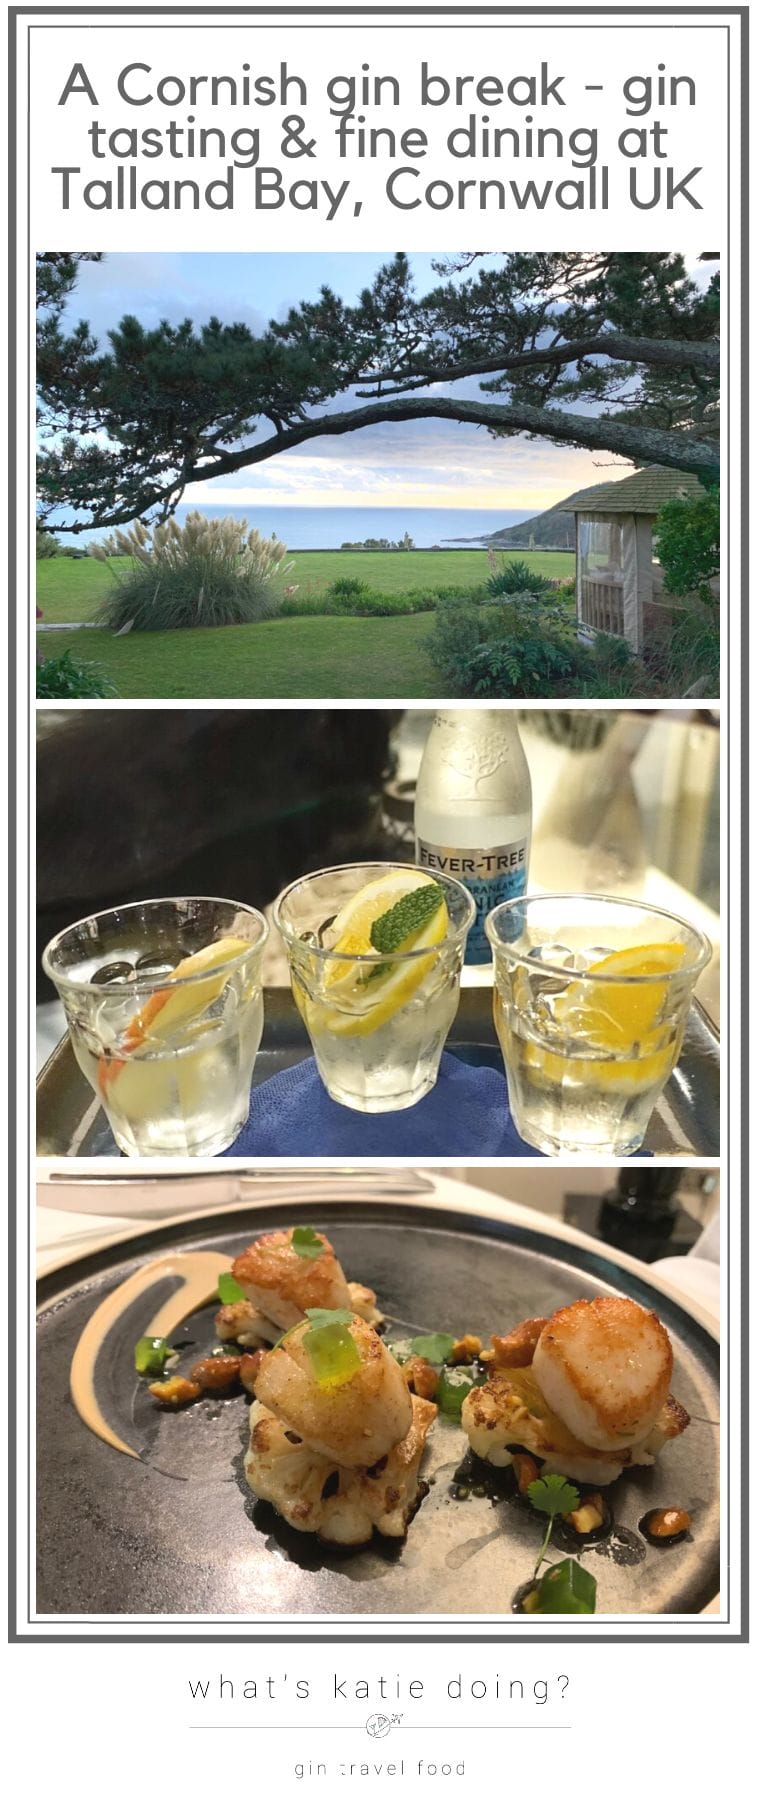 A Cornish gin break - gin tasting & fine dining at Talland Bay Hotel, Cornwall UK